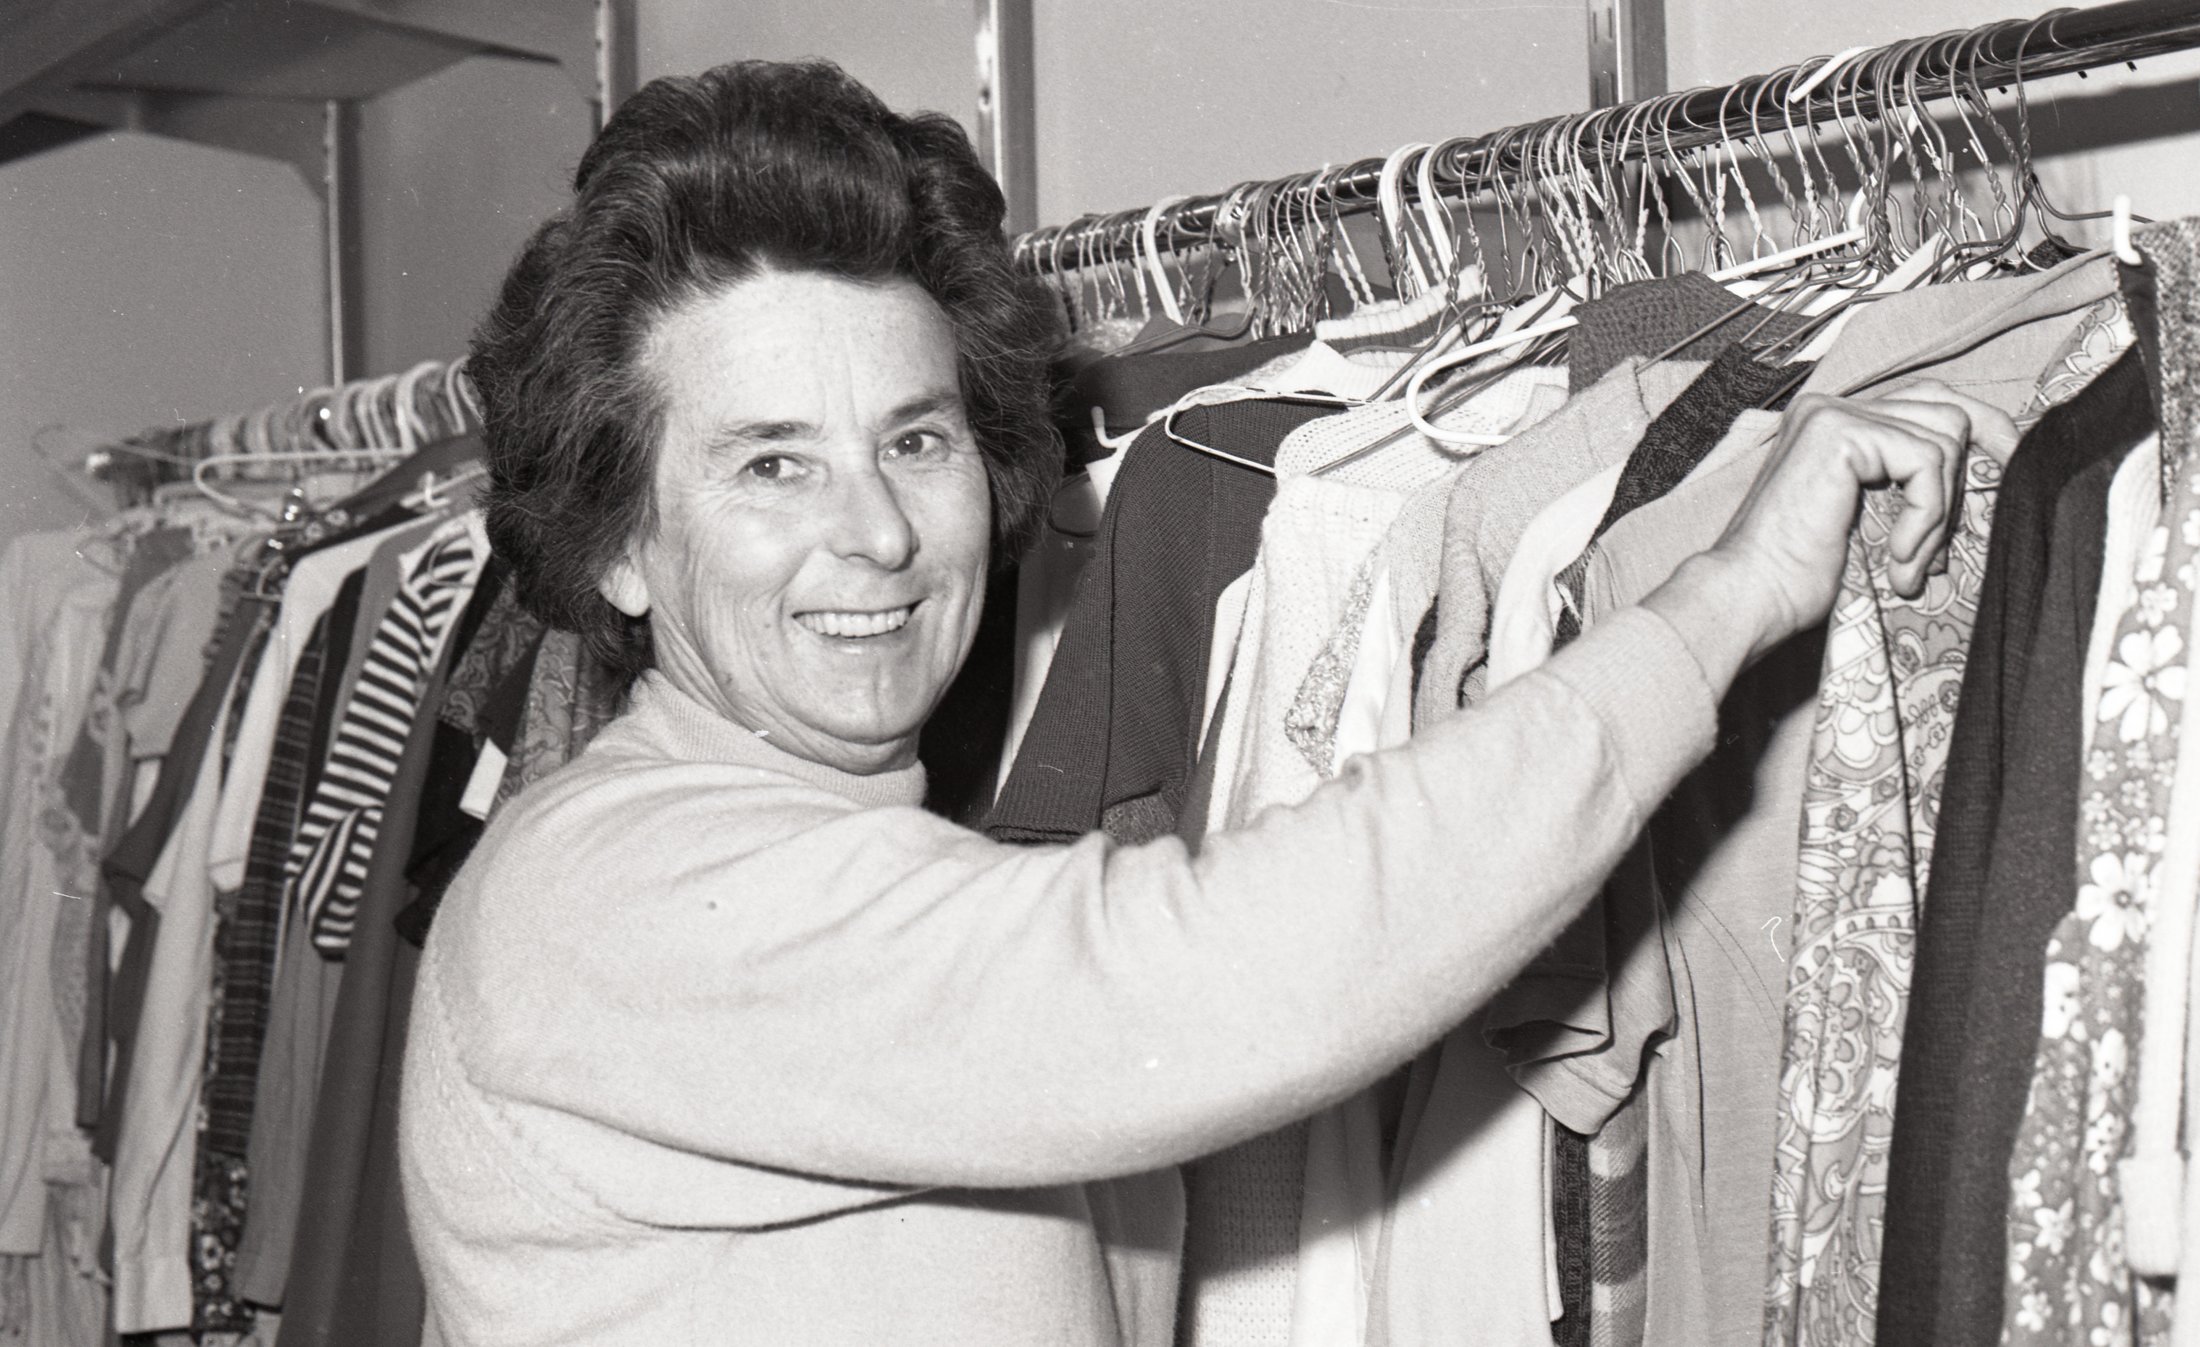 1975 - KC Fair - Woman Clothes